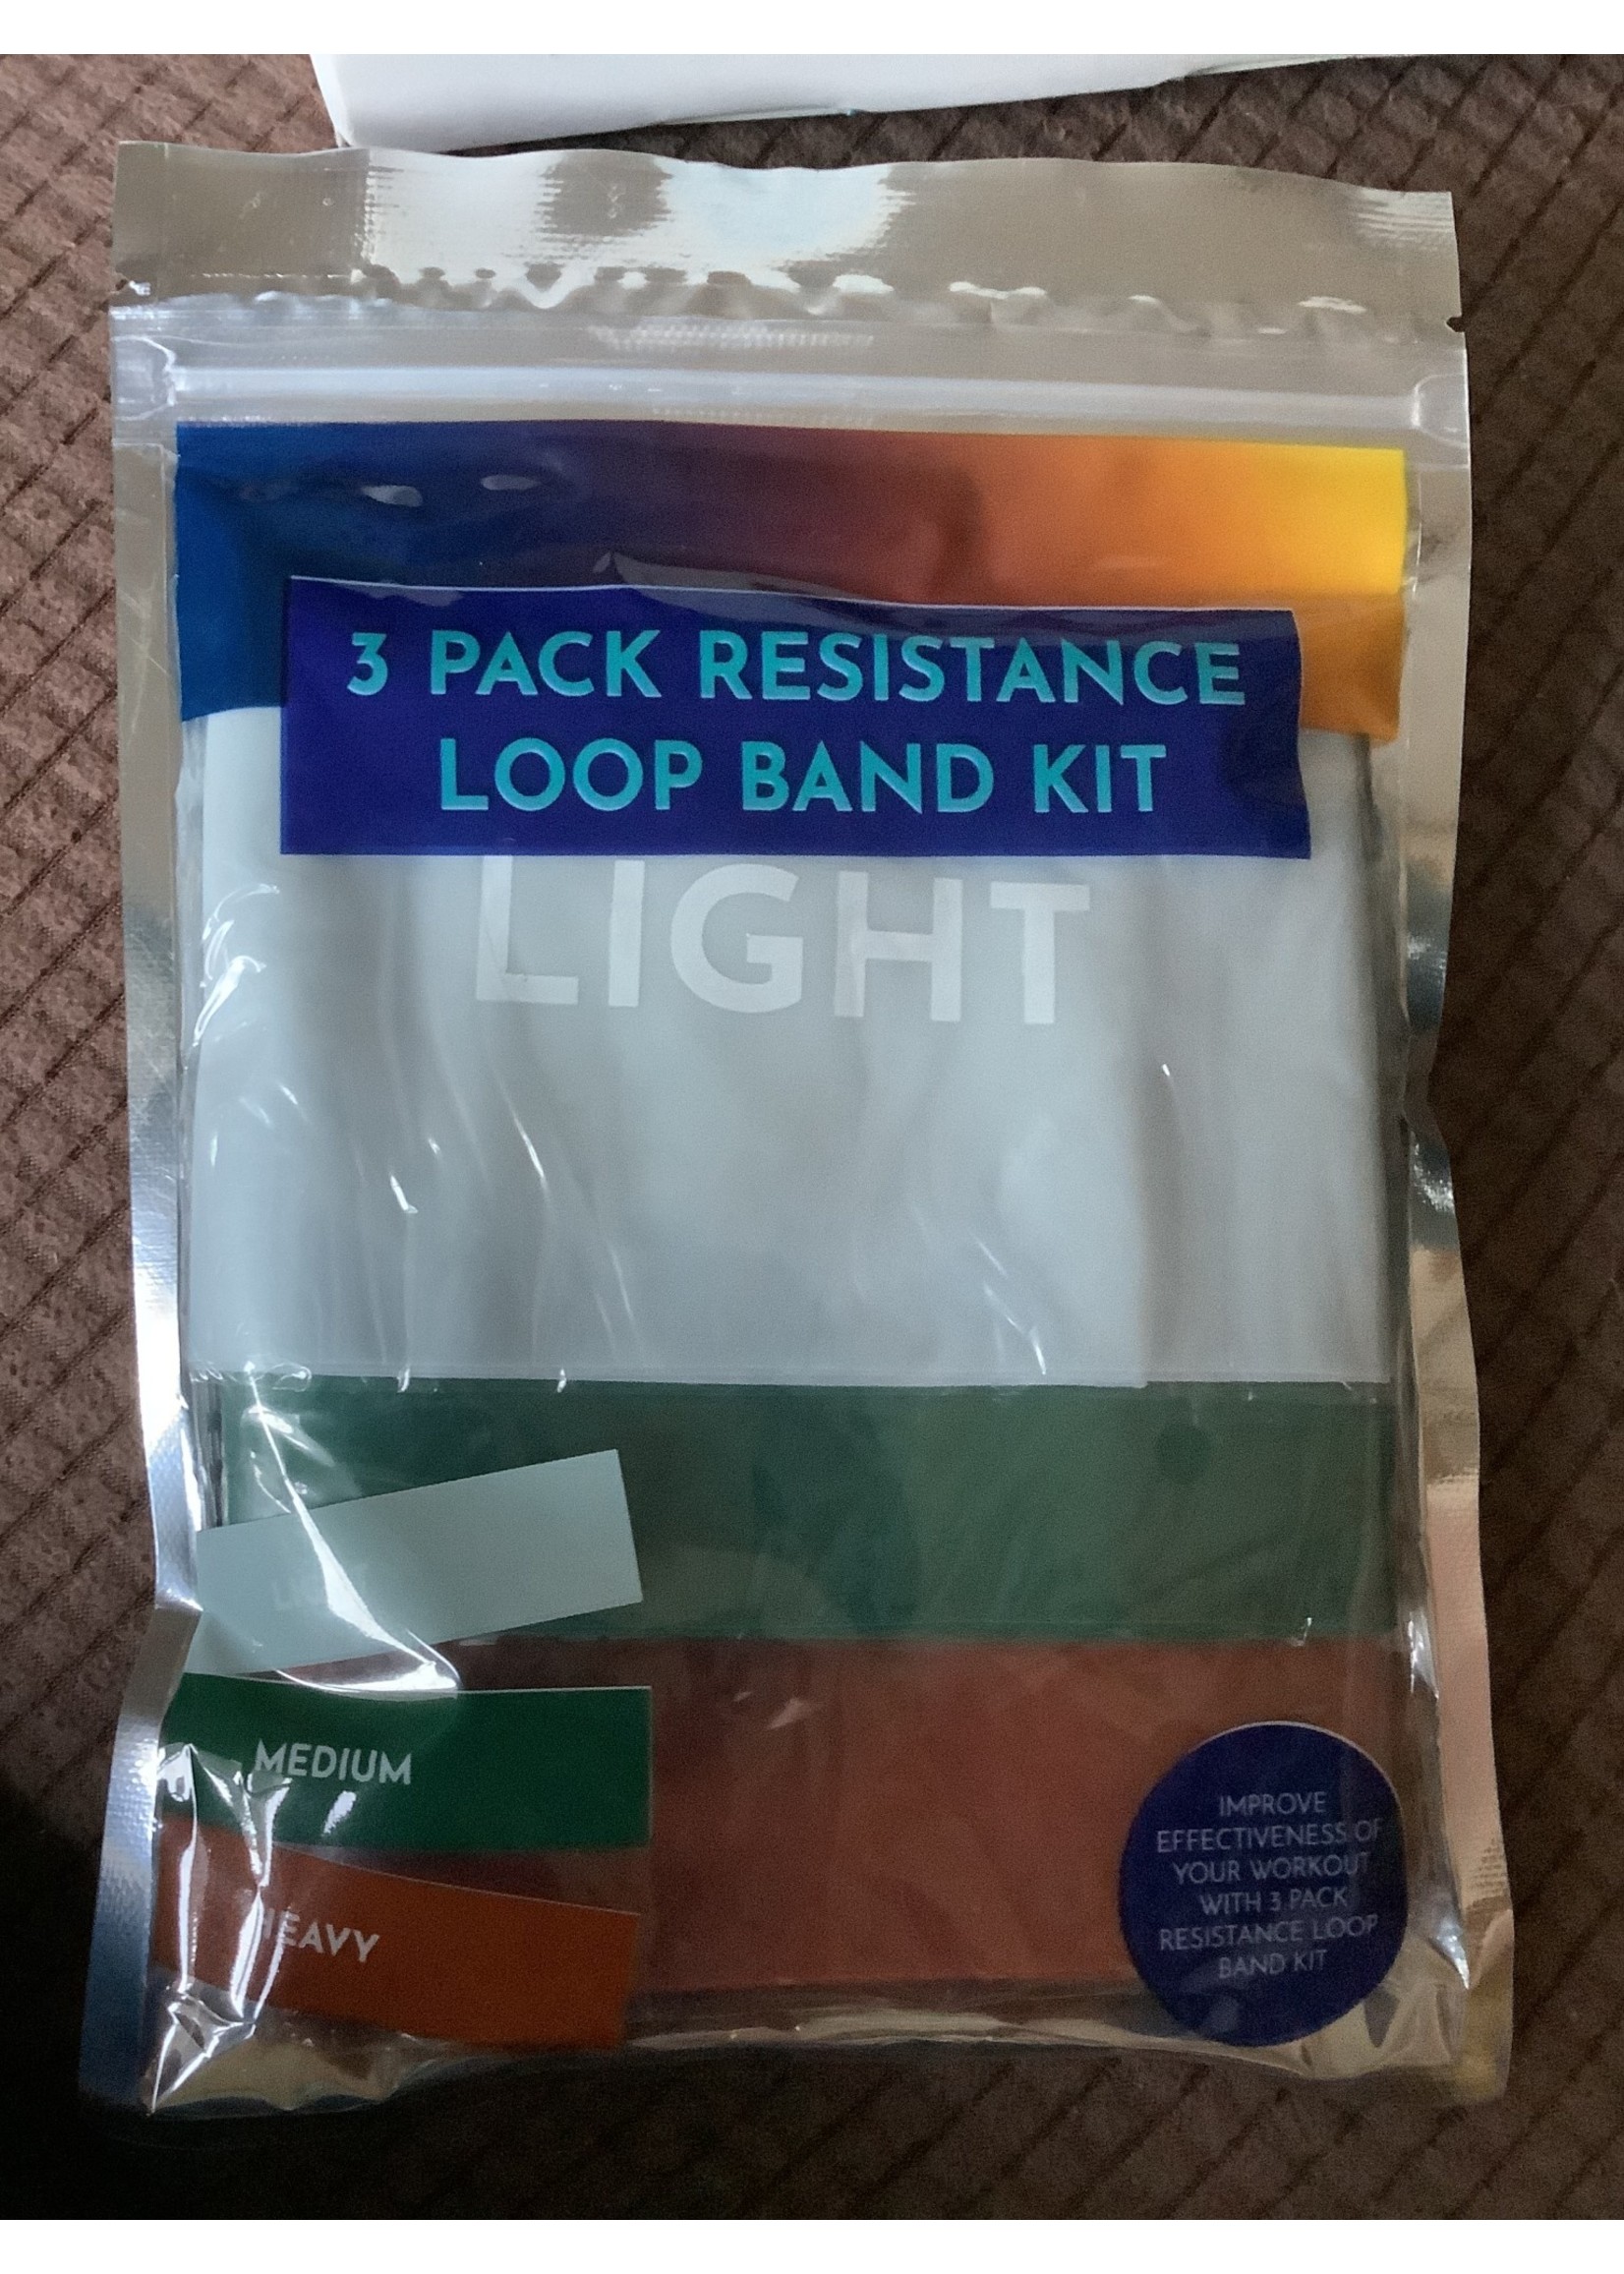 3 Pack Resistance Loop Band Kit